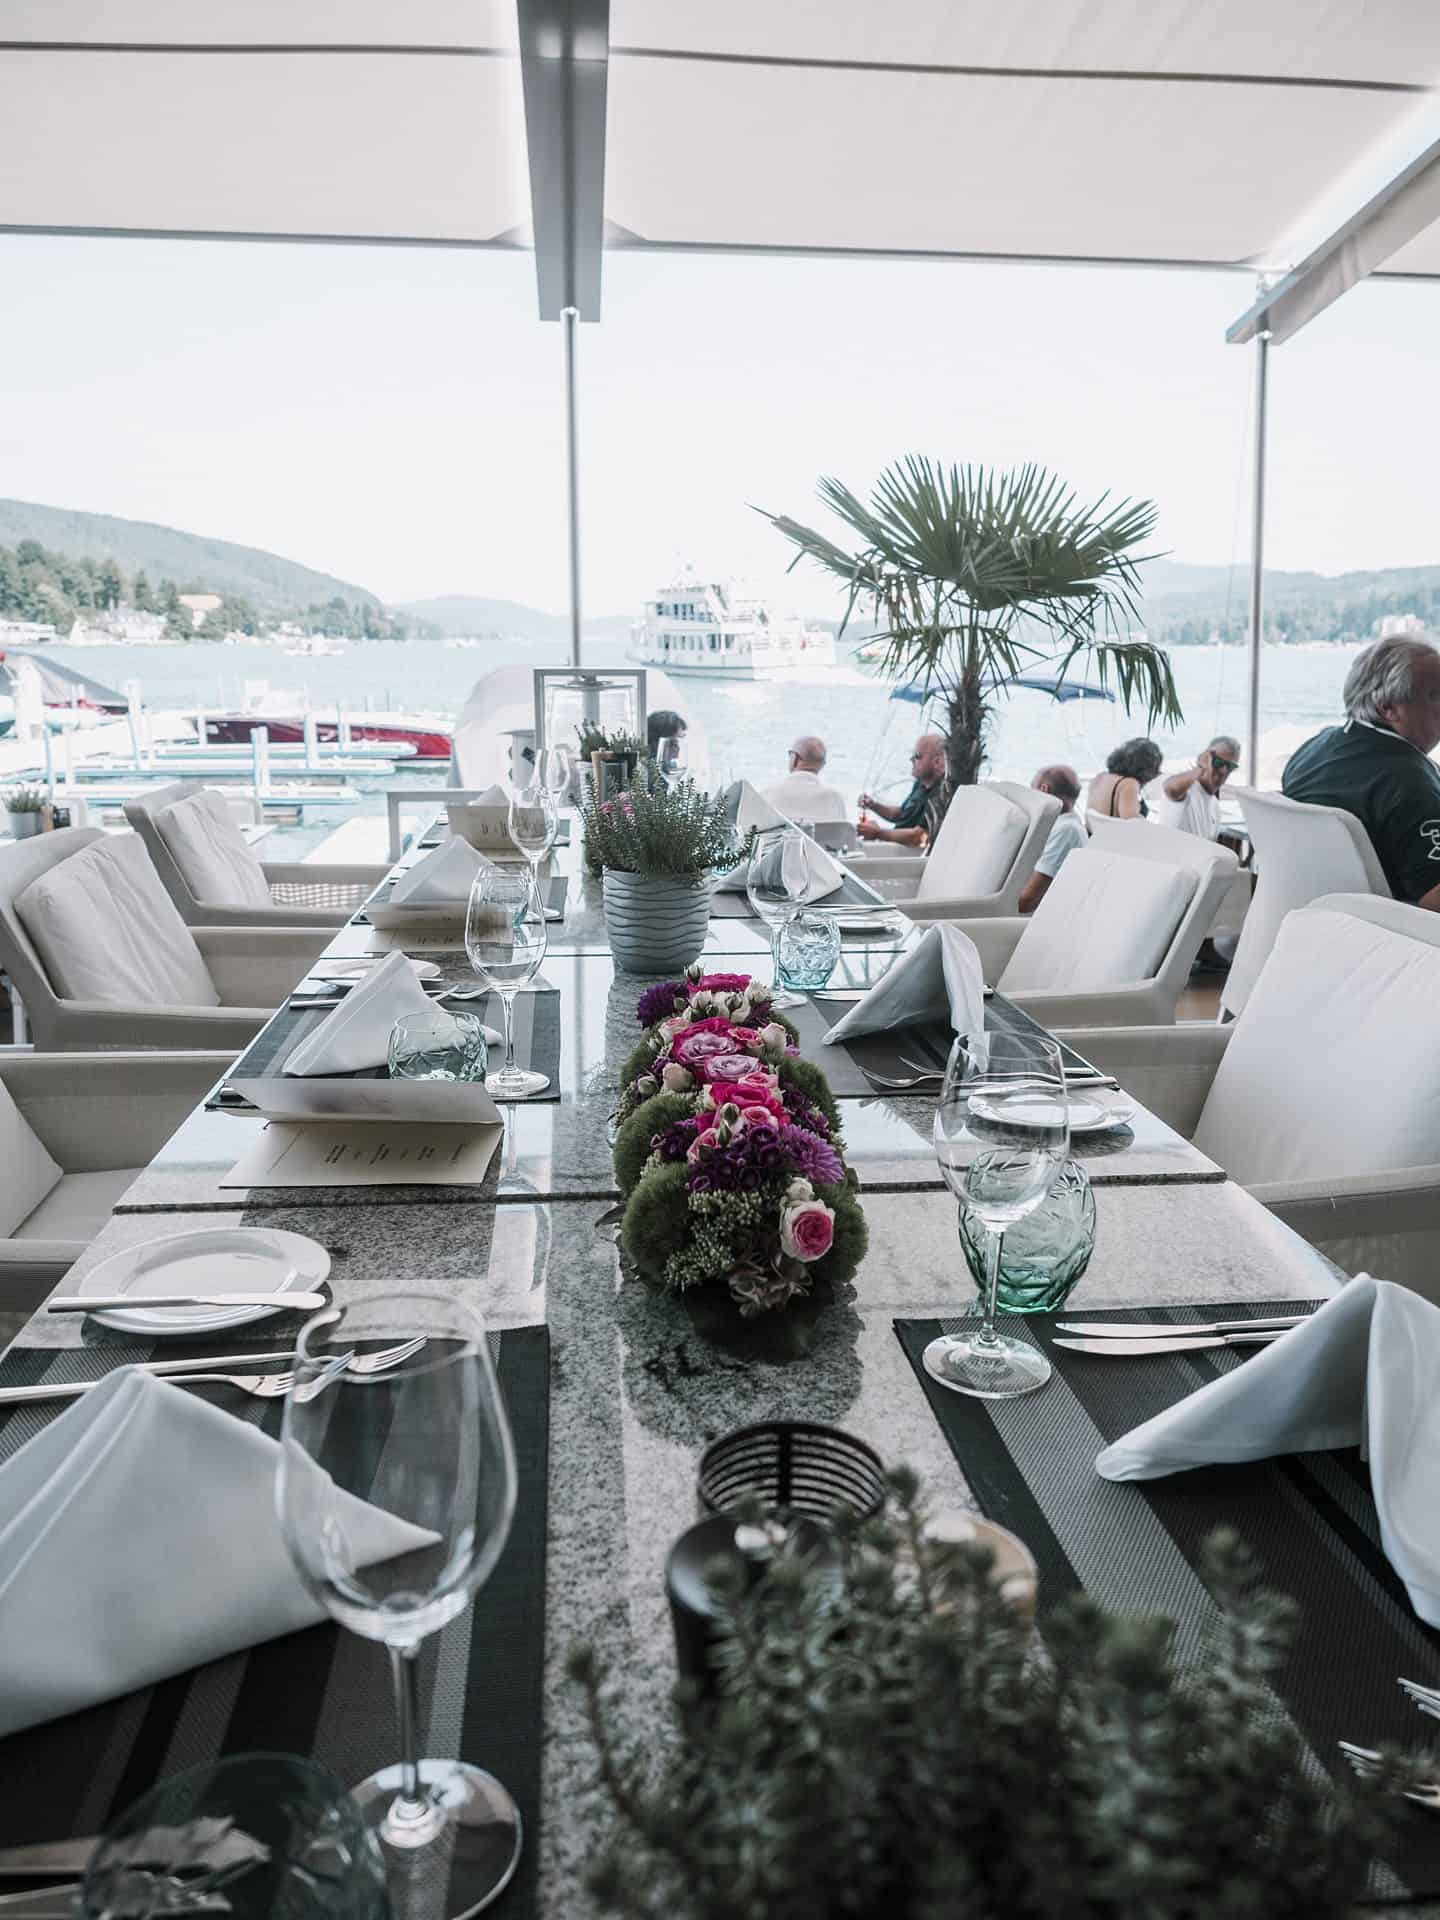 Auf einem Boot in Kroatien wird ein Tisch für ein Abendessen gedeckt.